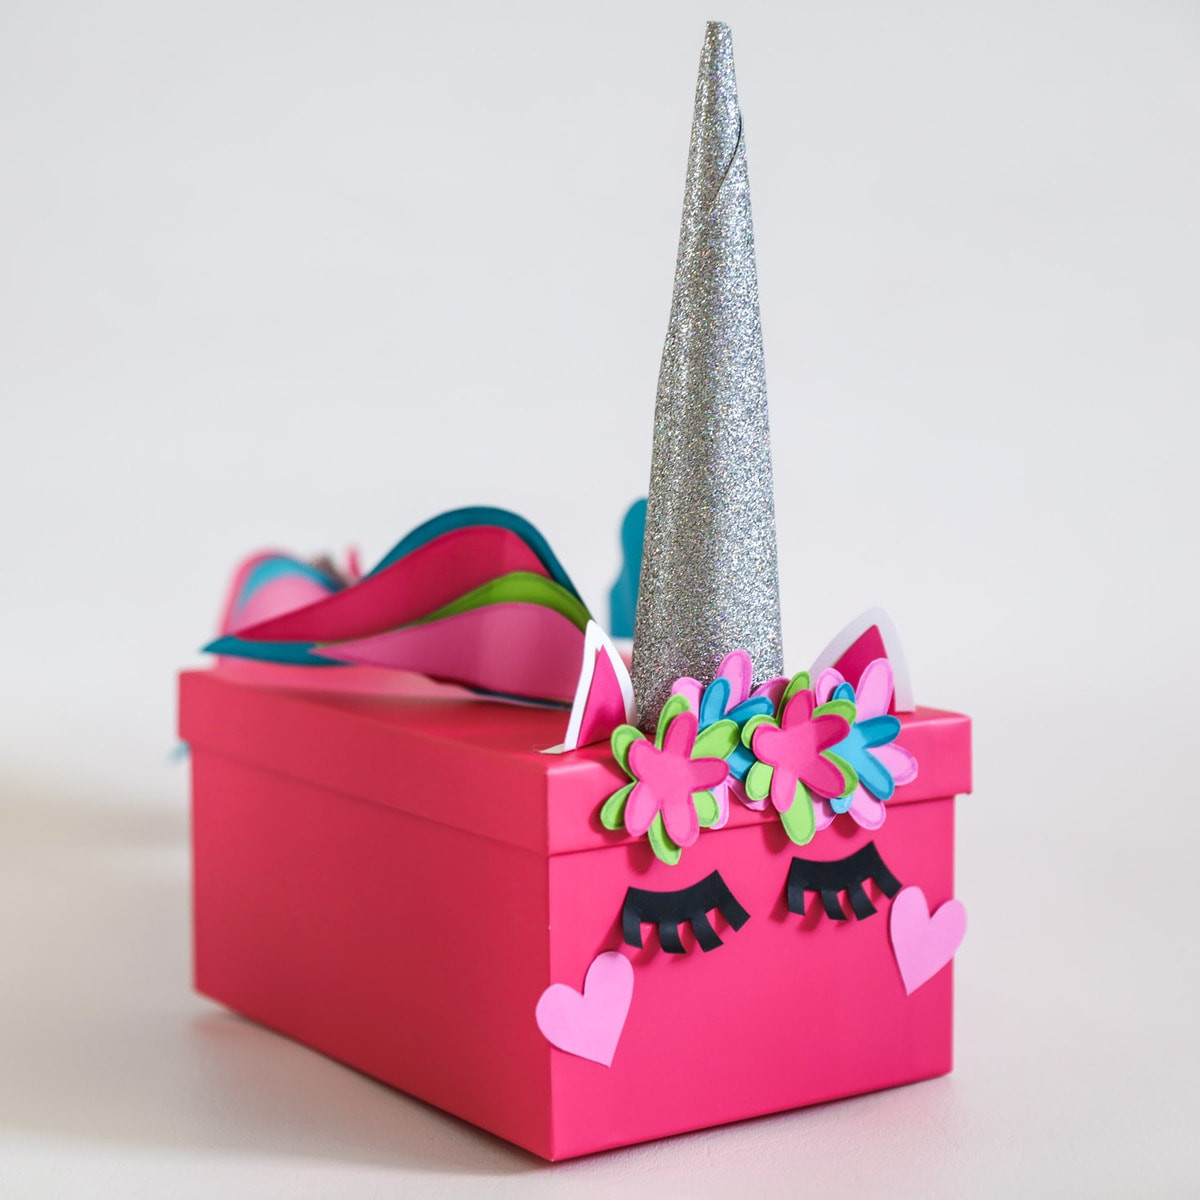 Girls Valentine Gift Ideas
 Valentines Box Ideas